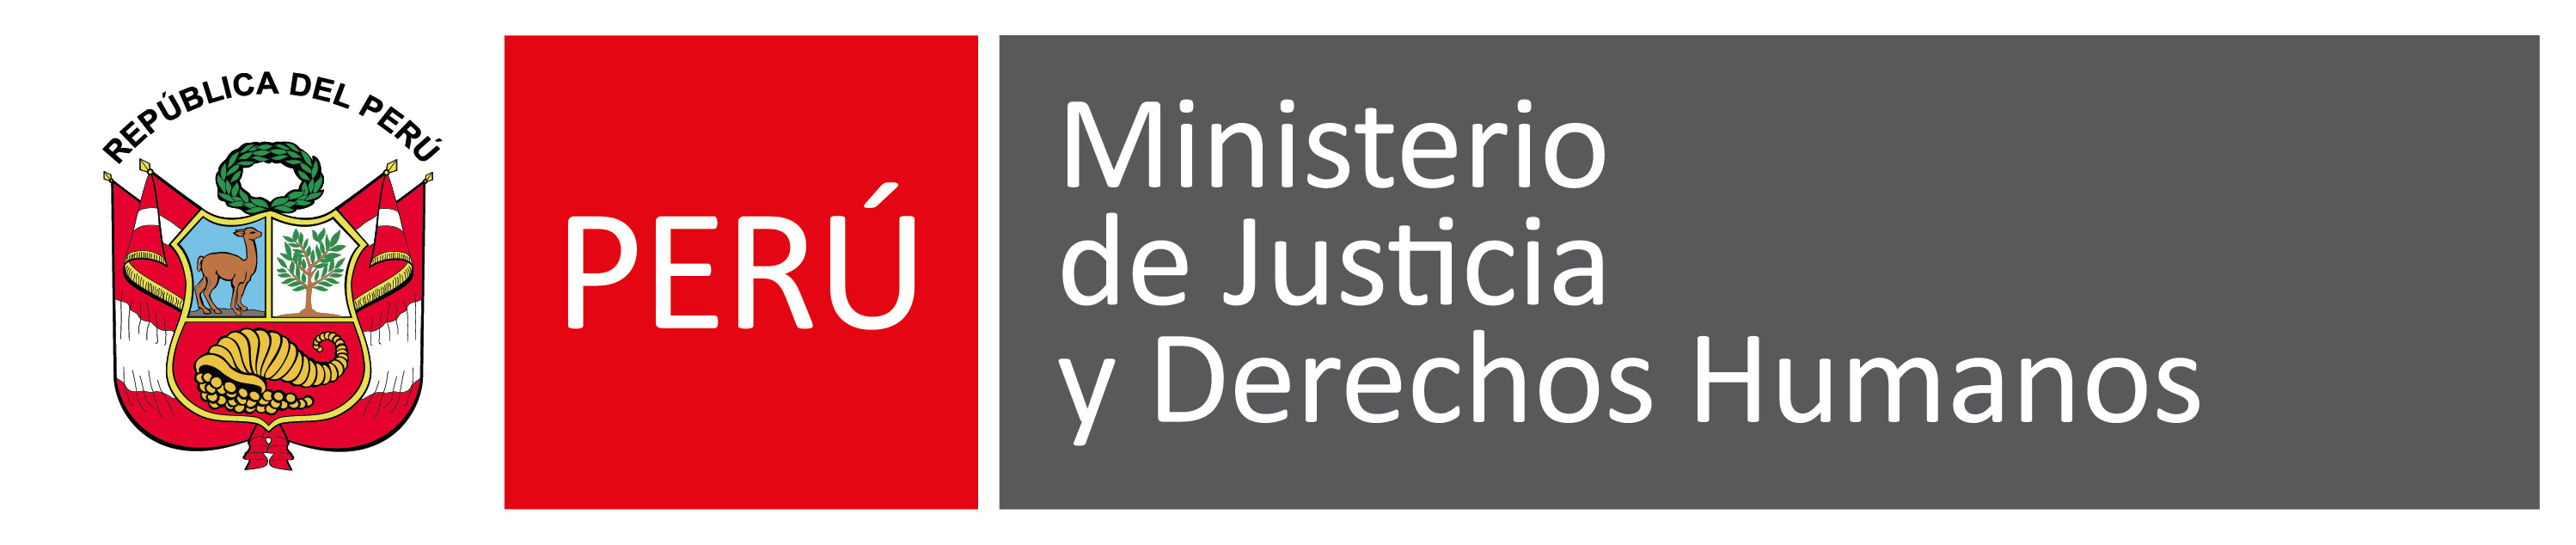 Logo del Ministerio de Justicia y Derechos Humanos, Escudo del Perú, Ministerio de Justicia y Derechos Humanos